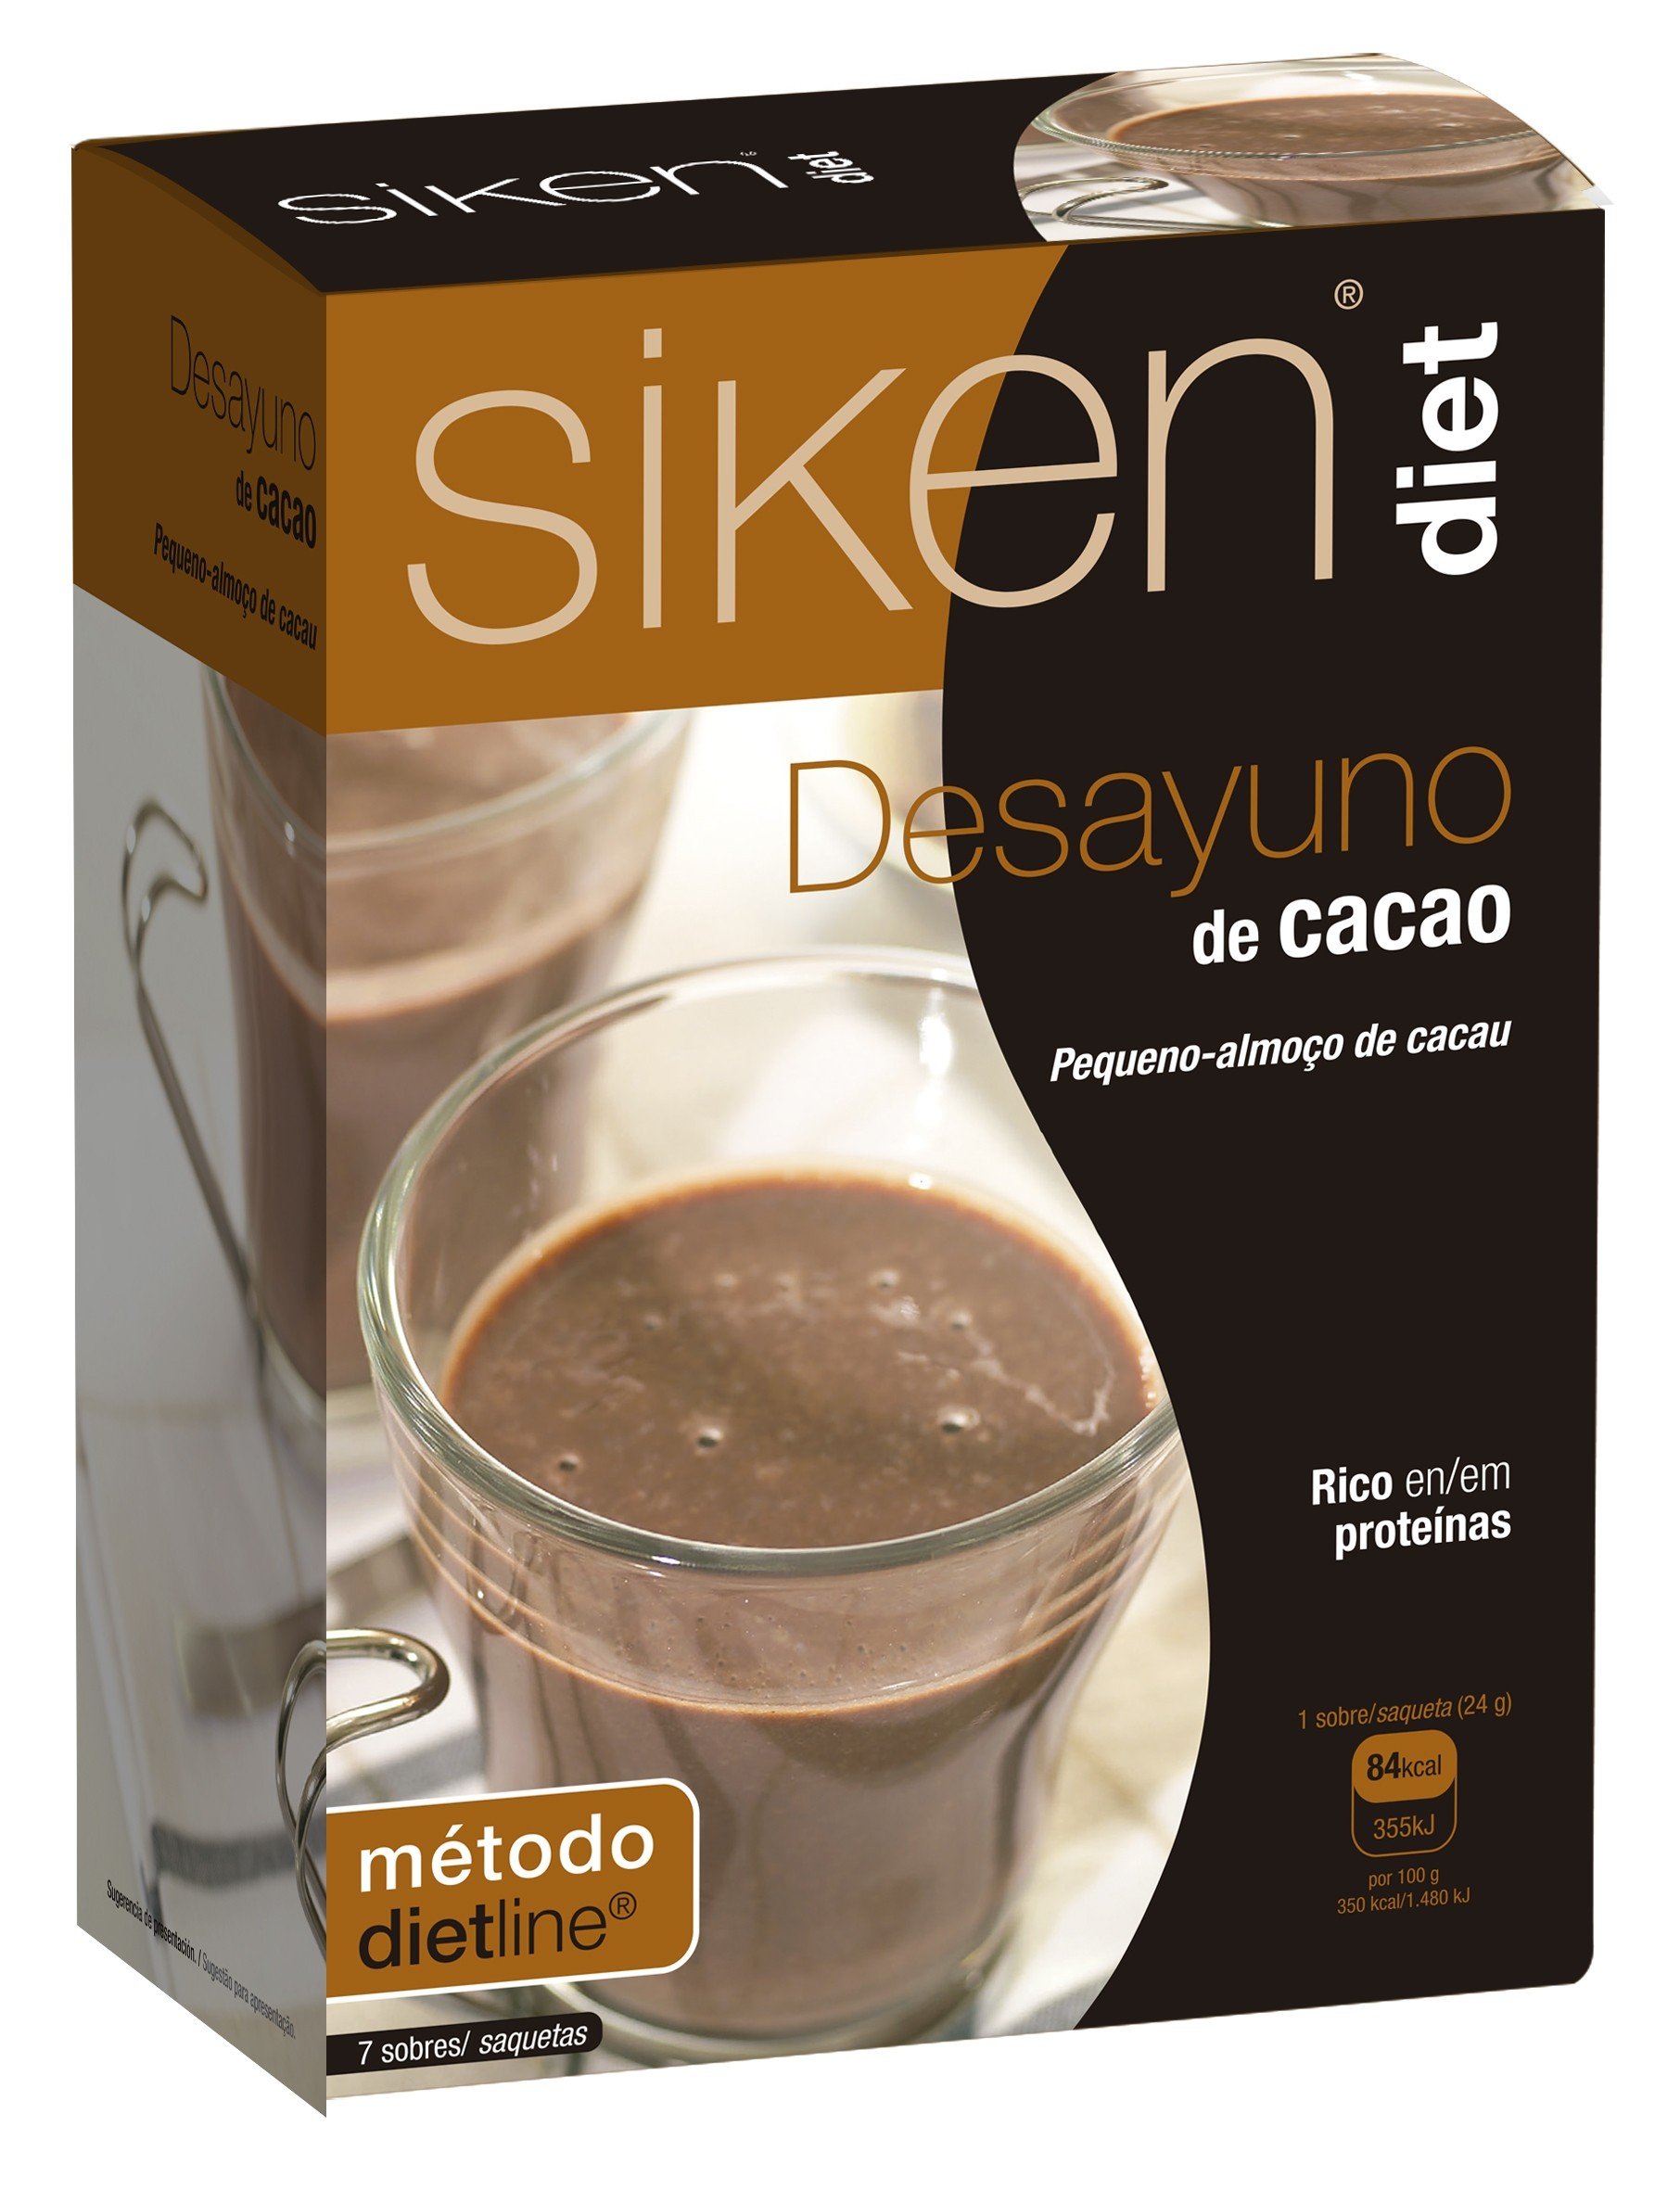 Siken Diet Desayuno de Cacao, 7 Sobres.